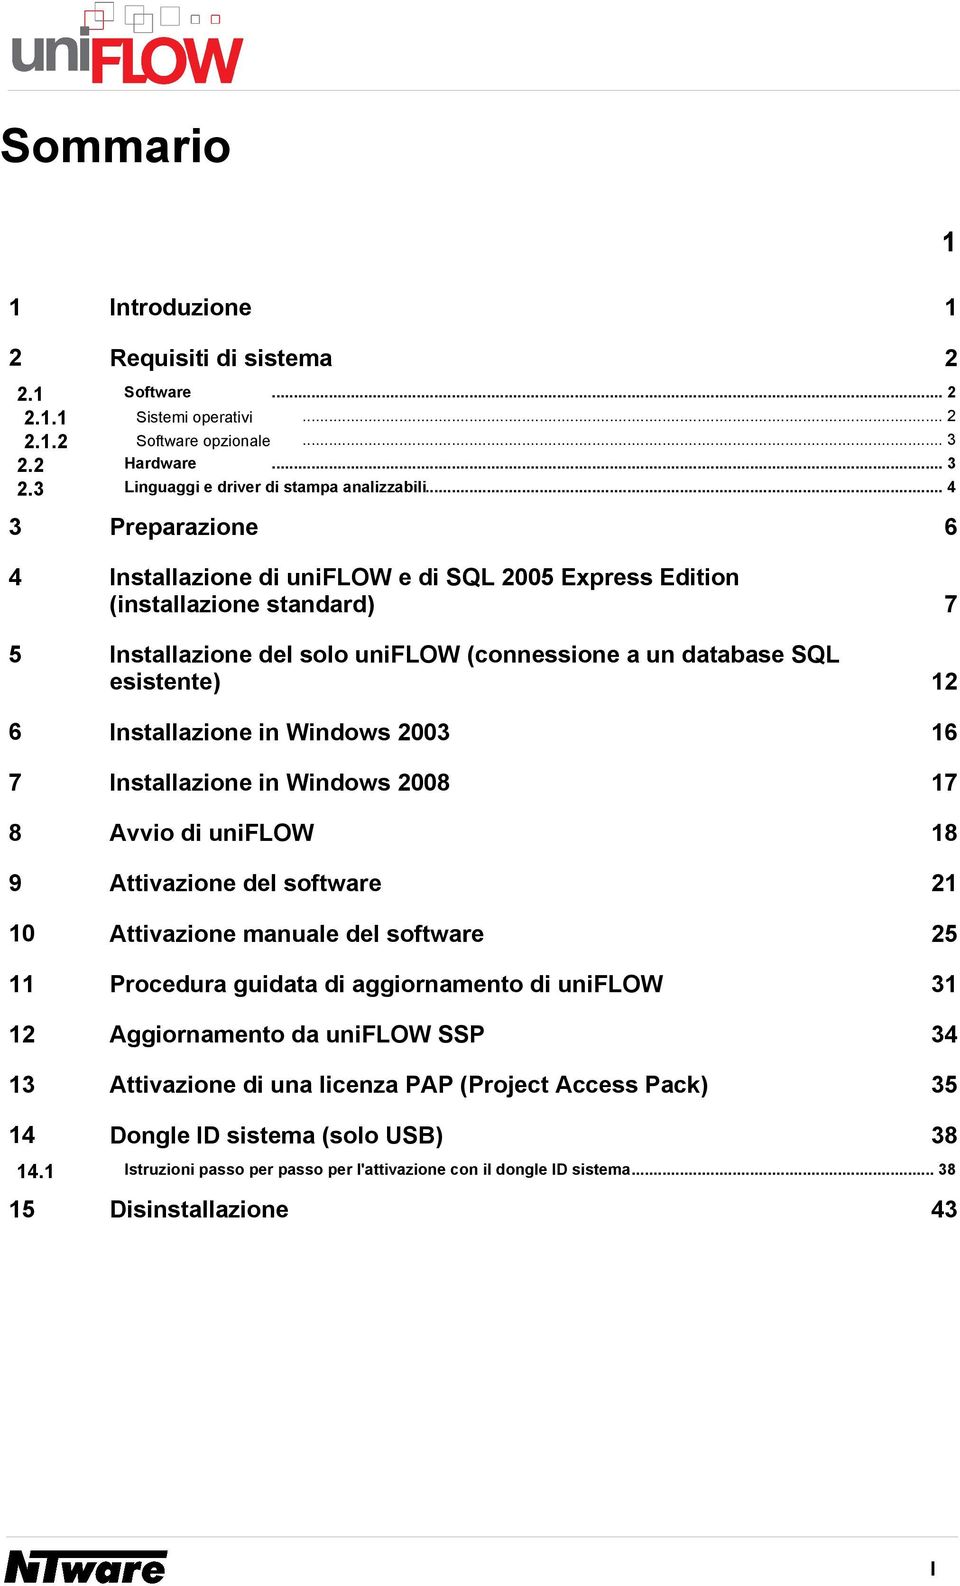 esistente) 12 6 Installazione in Windows 2003 16 7 Installazione in Windows 2008 17 8 Avvio di uniflow 18 9 Attivazione del software 21 10 Attivazione manuale del software 25 11 Procedura guidata di